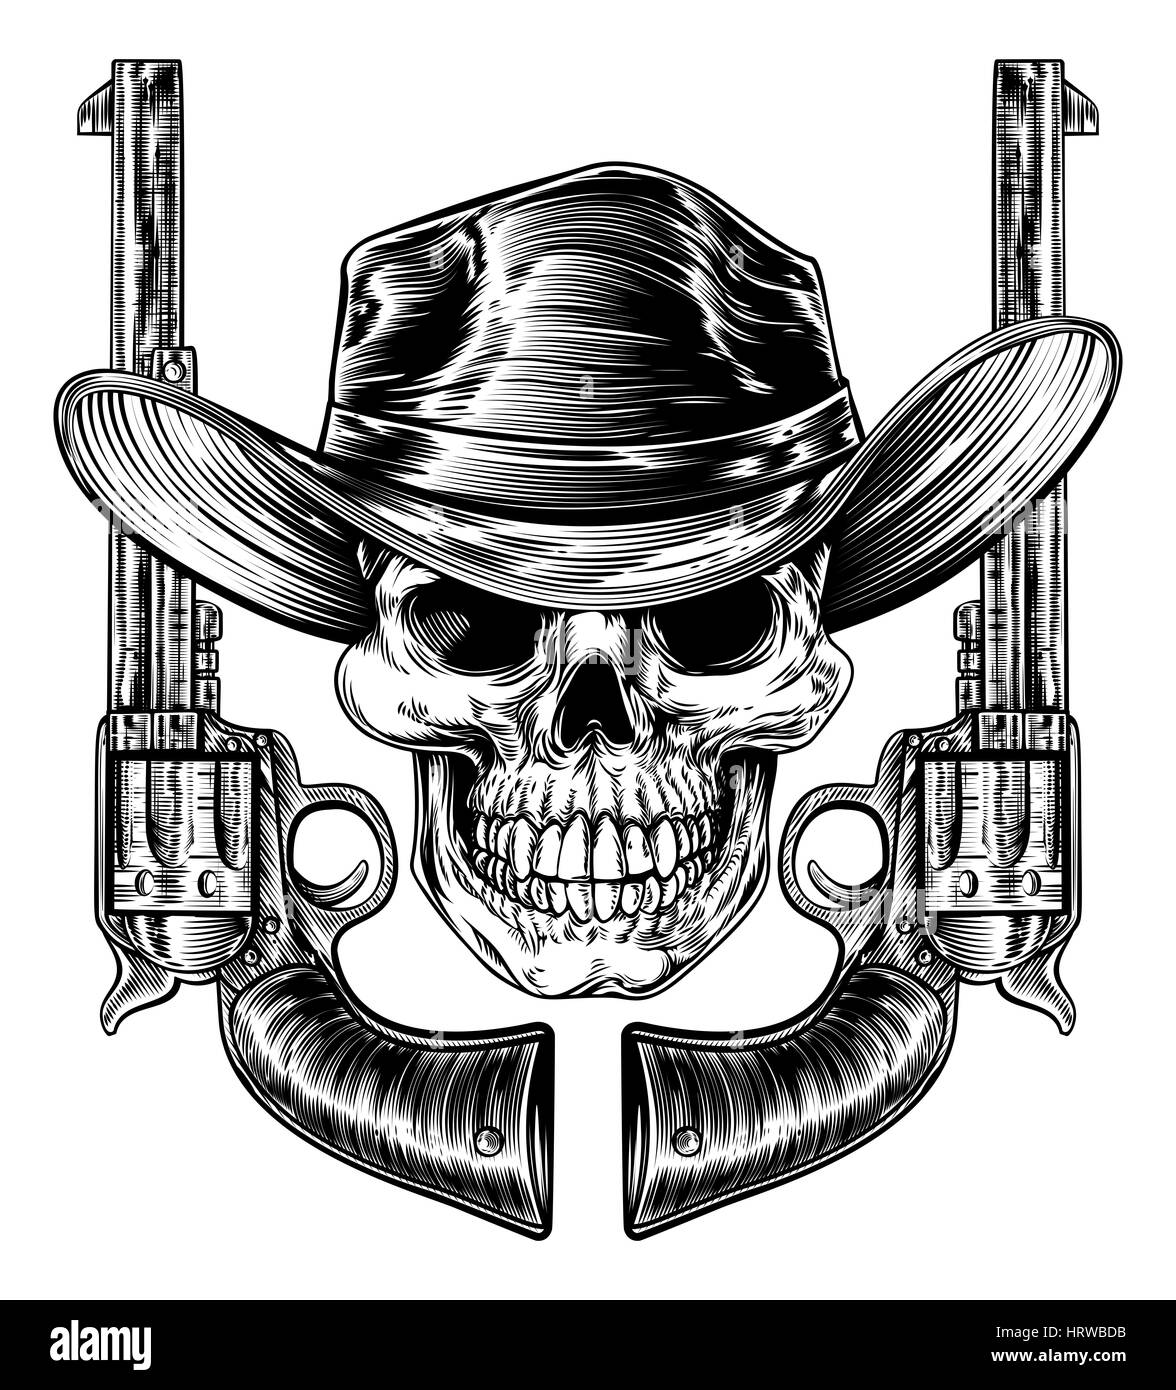 Cowboy-Schädel in einem western Hut und ein paar Pistole Revolver Pistole sechs Shooter Pistolen gezeichnet in einem Vintage-retro-Holzschnitt geätzt oder graviert Stil Stockfoto